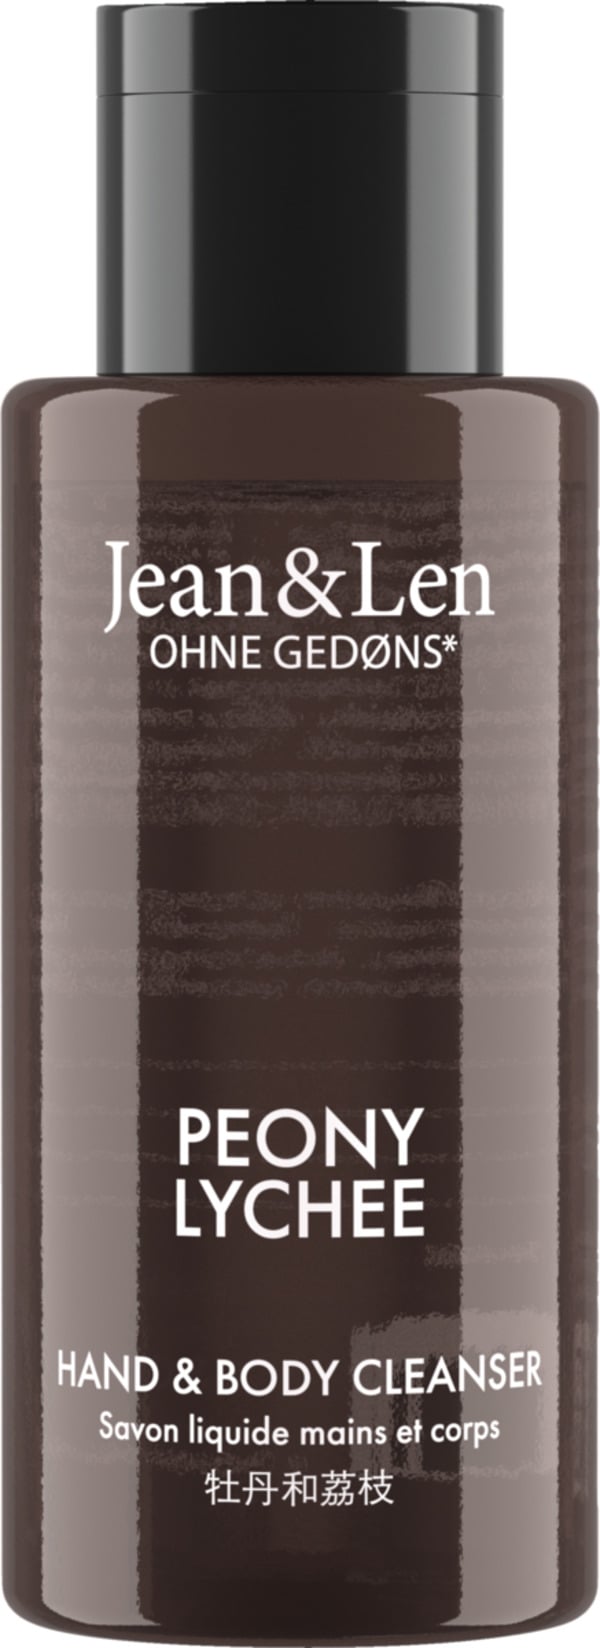 Bild 1 von Jean&Len Mini Hand & Body Cleanser Peony Lychee